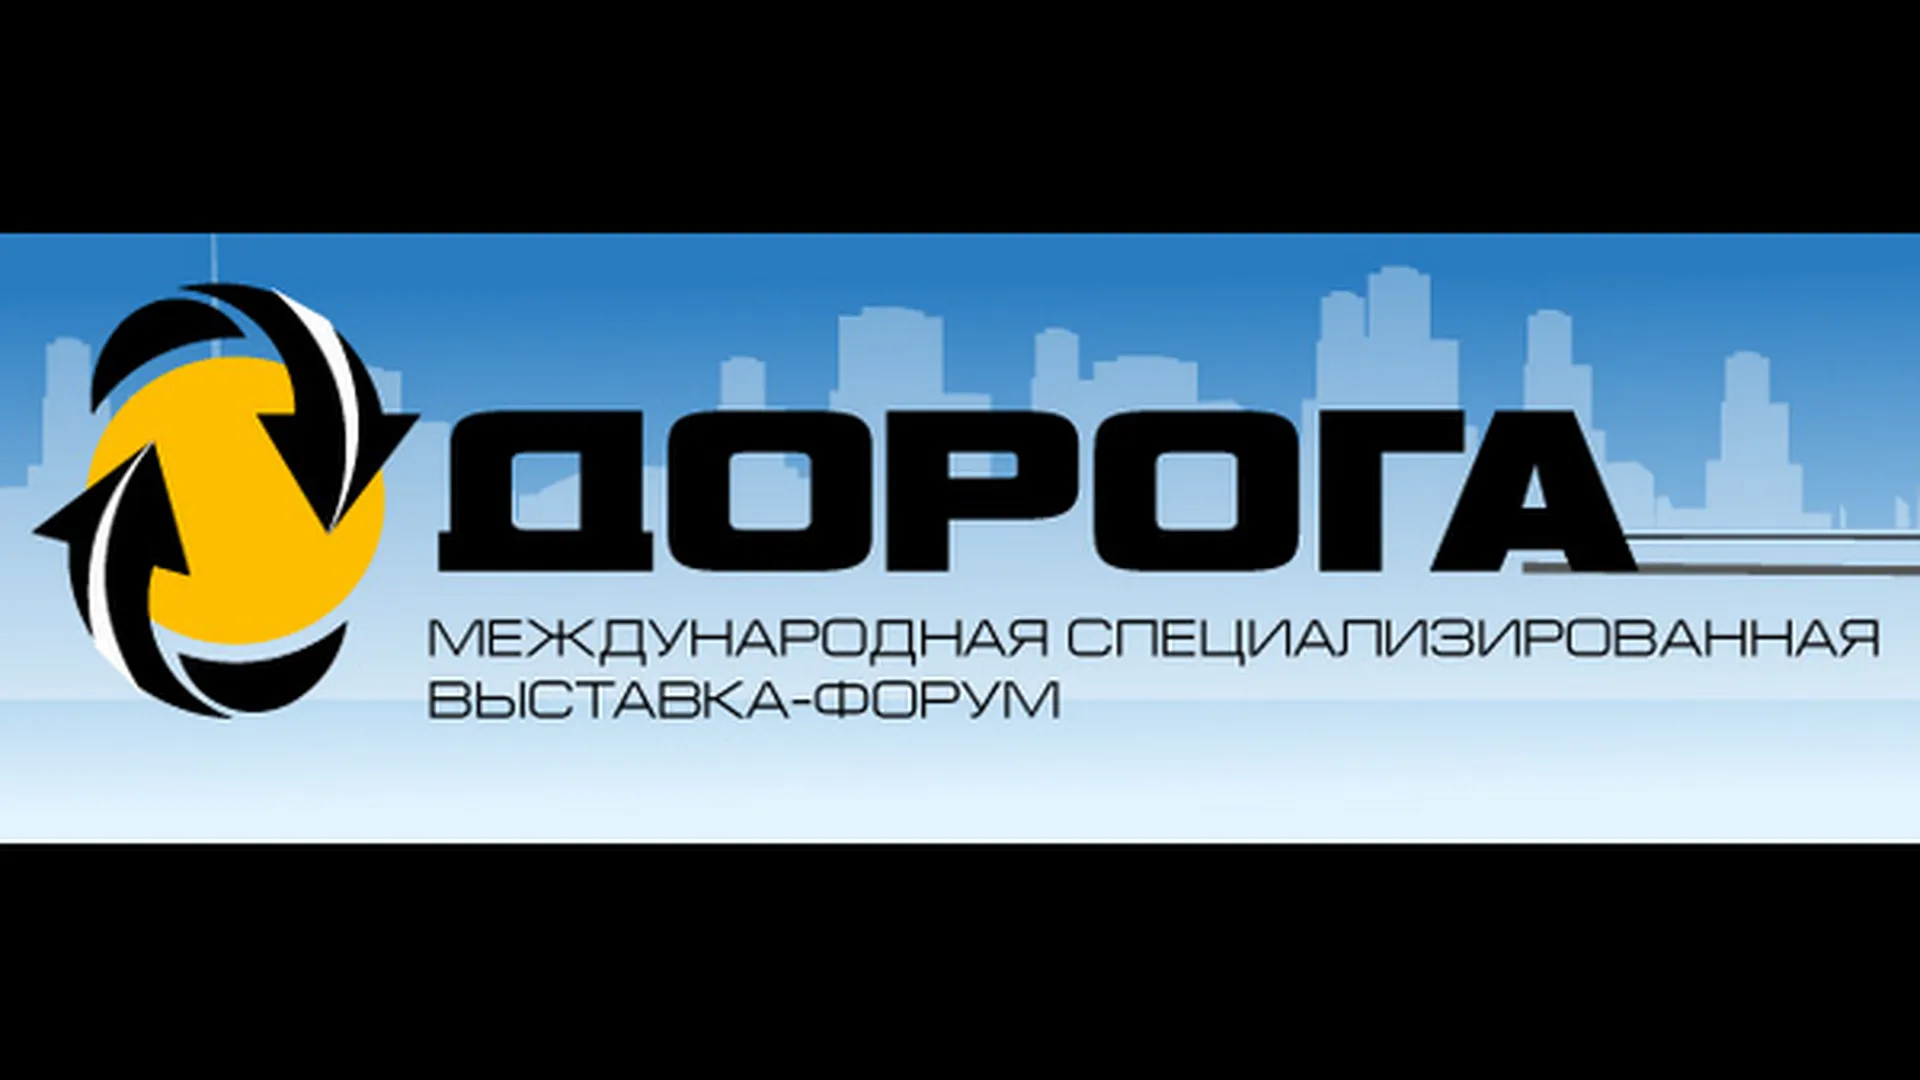 Выставка-форум «ДОРОГА» открывается в «Крокус-Экспо»